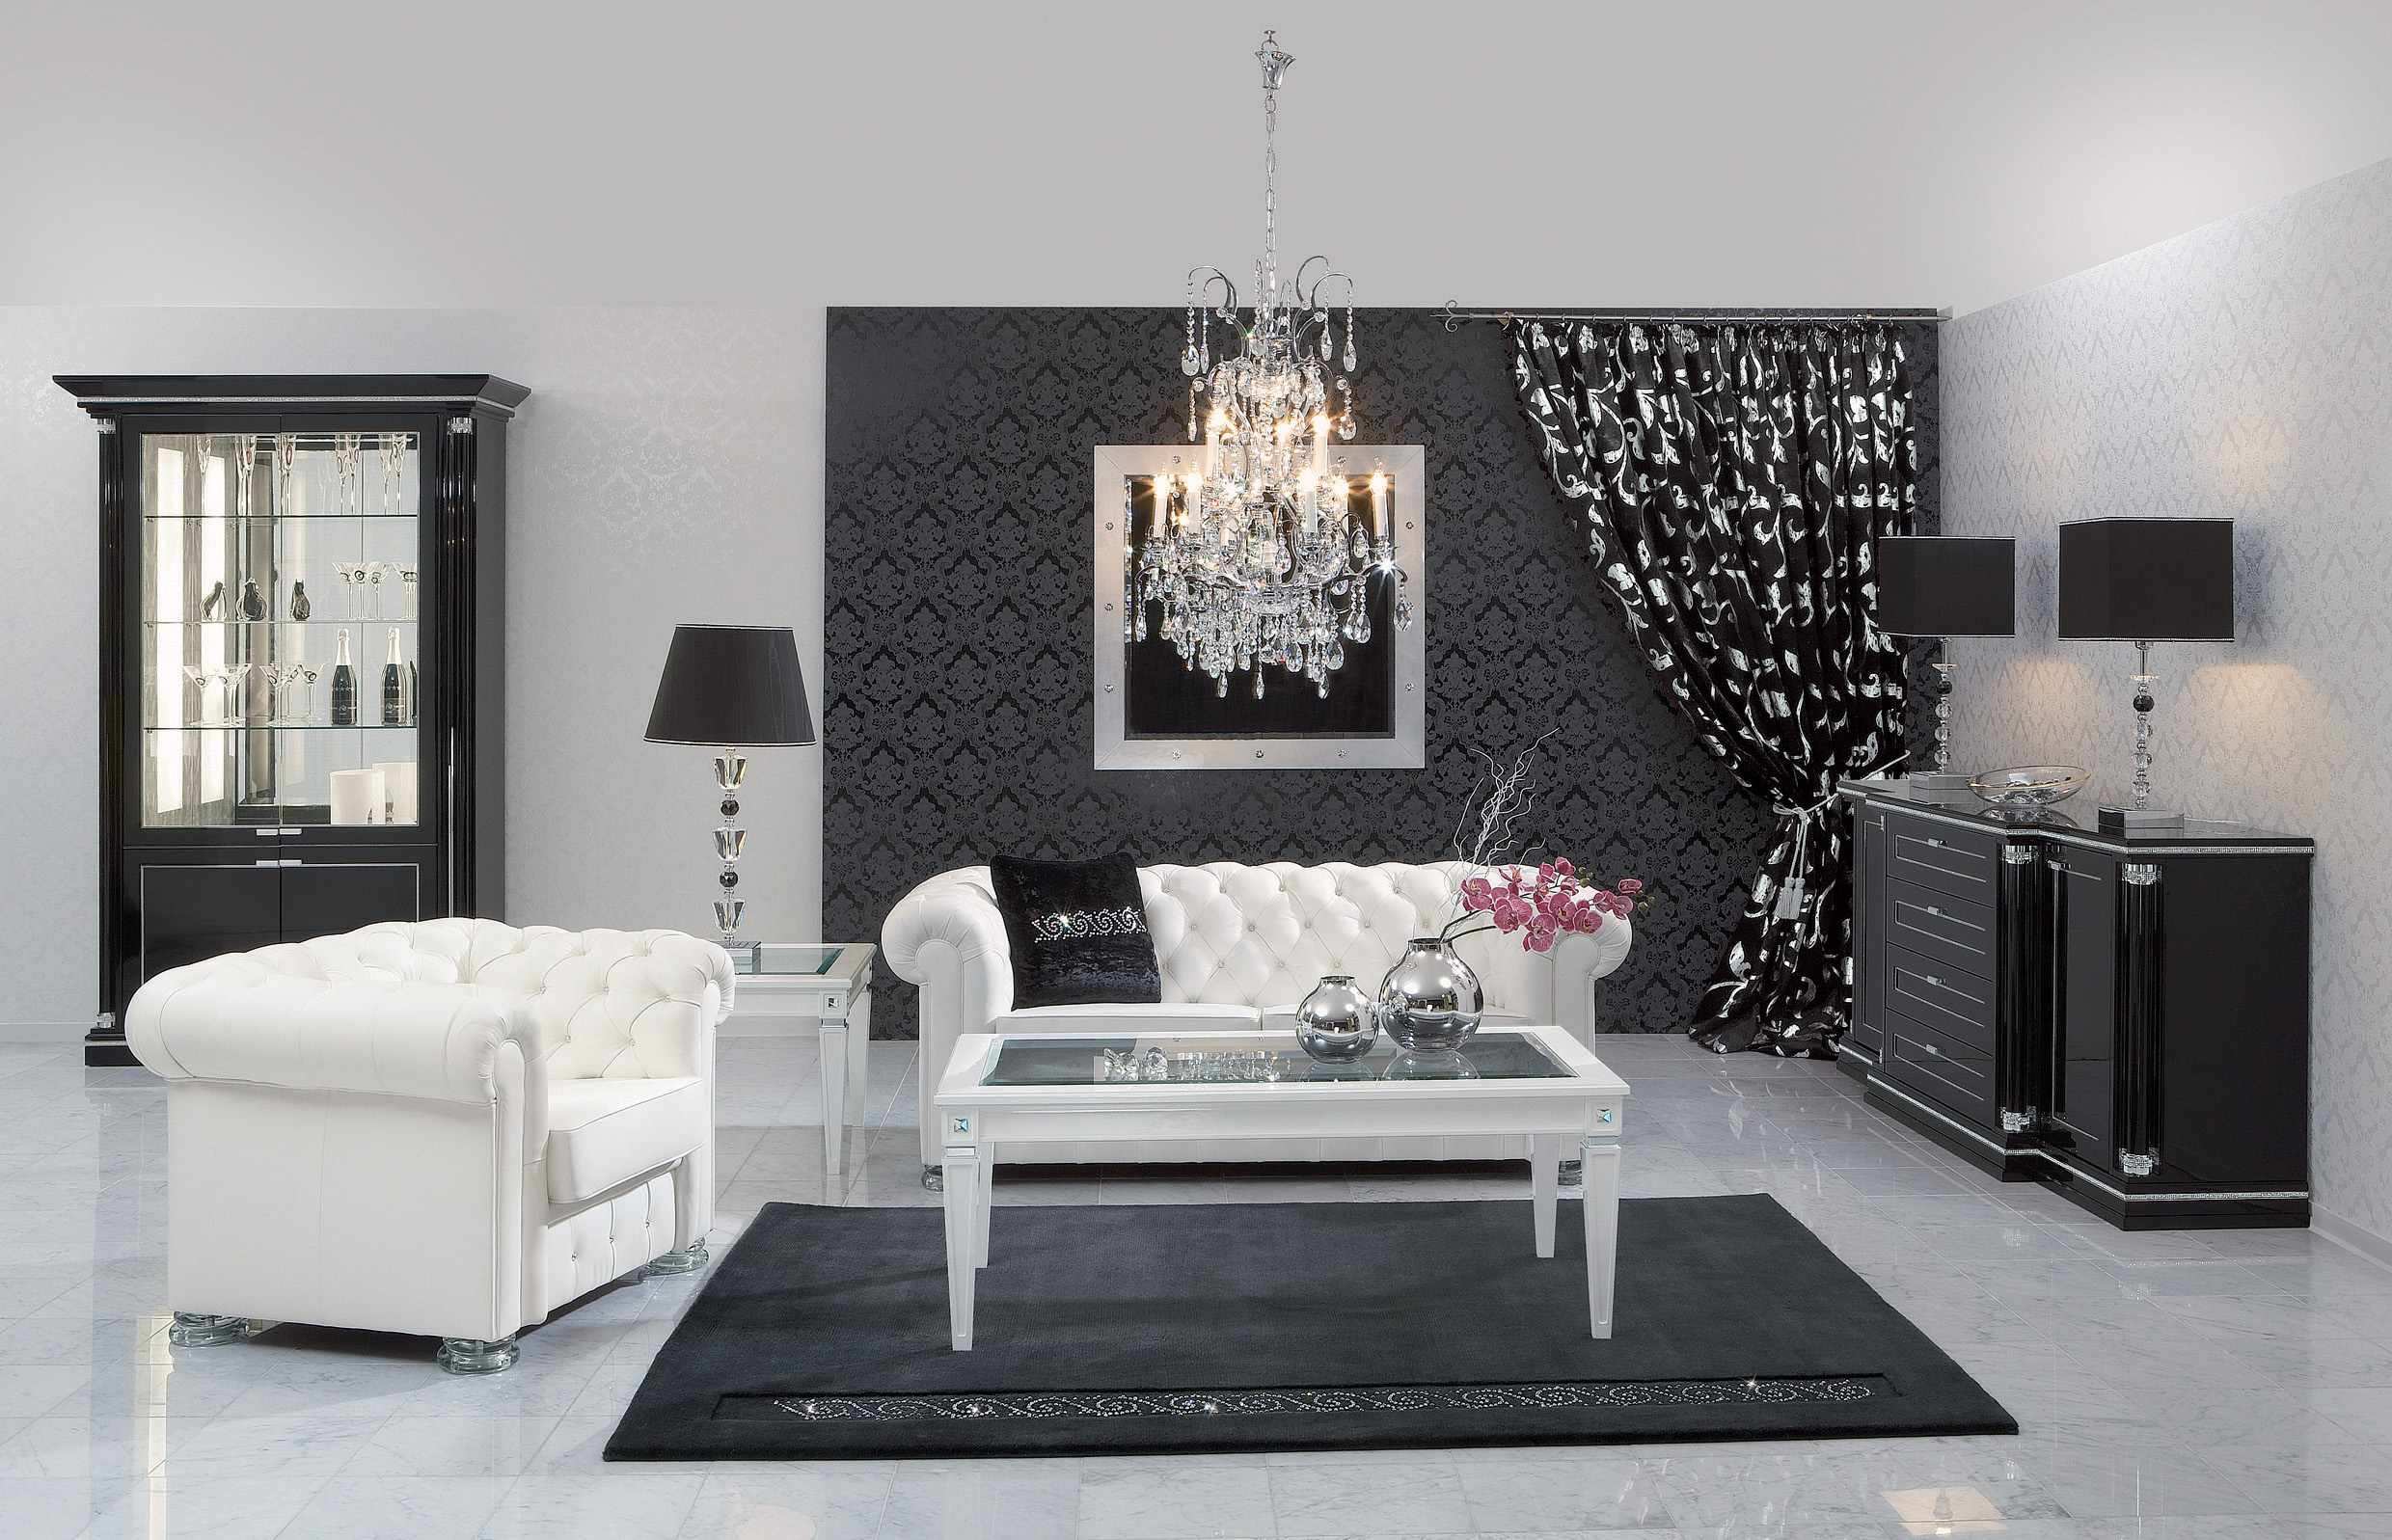 White Living Room Design Ideas, Black And White Living Room Design Ideas